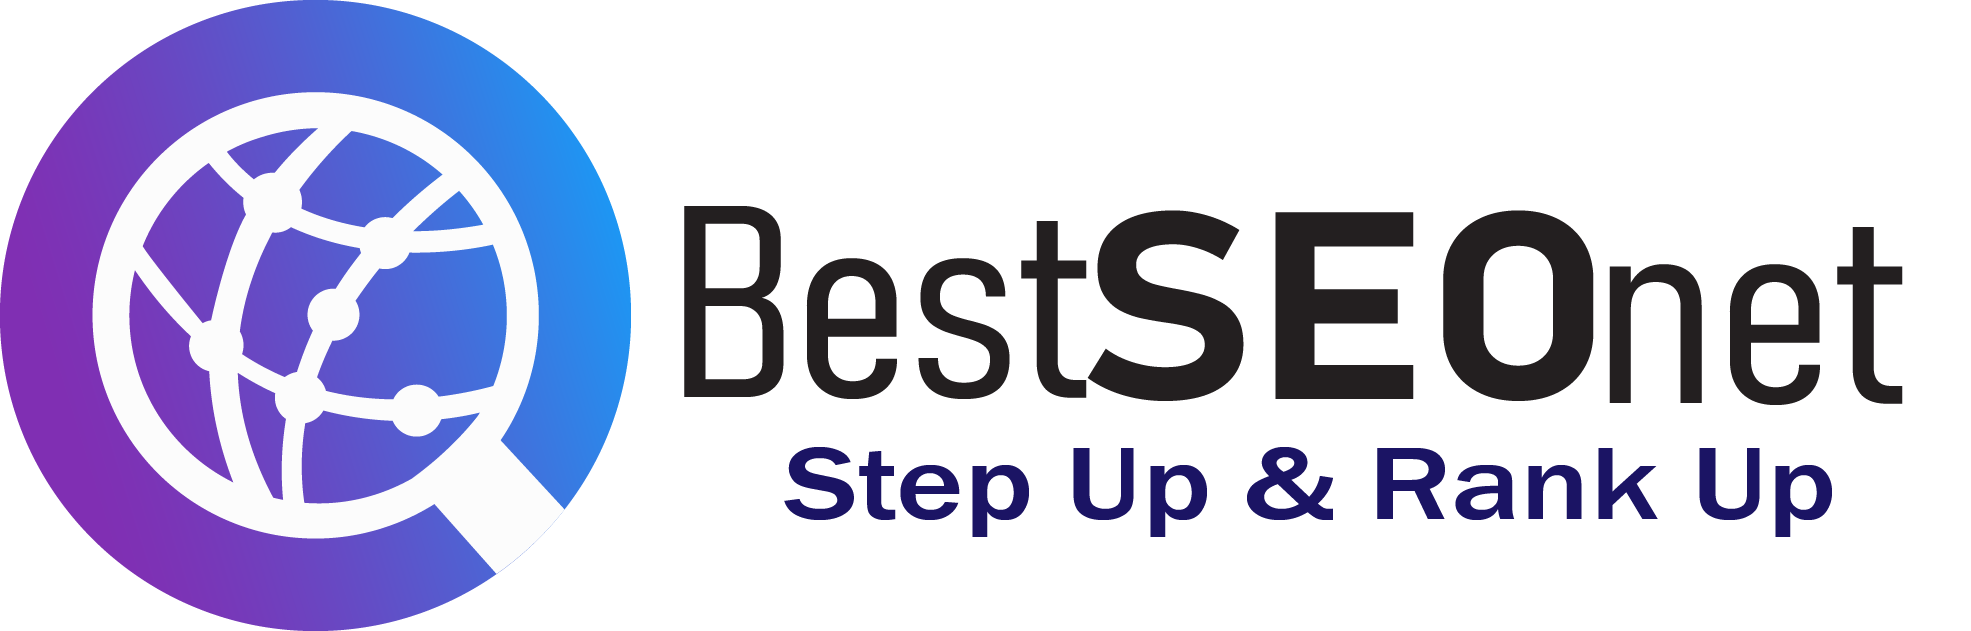 Best SEO net Logo